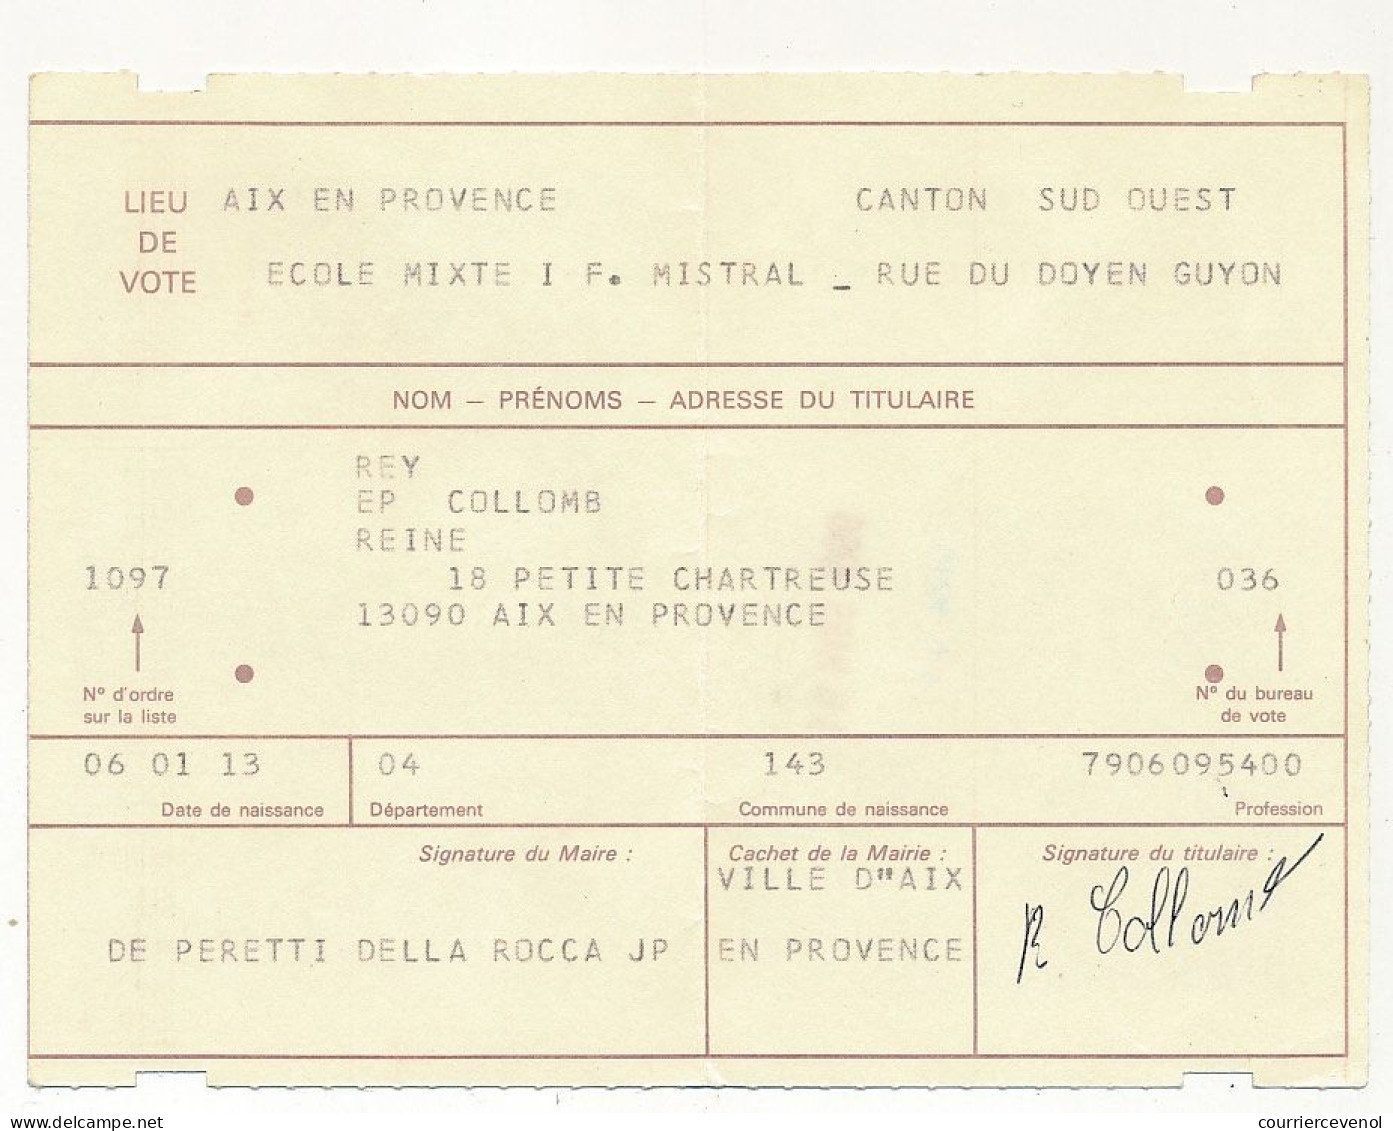 FRANCE - Carte D'électeur X2 1985/1986 - Mairie De Cassis (B Du R) Et Mairie D'Aix En Provence (B Du R) - Documents Historiques